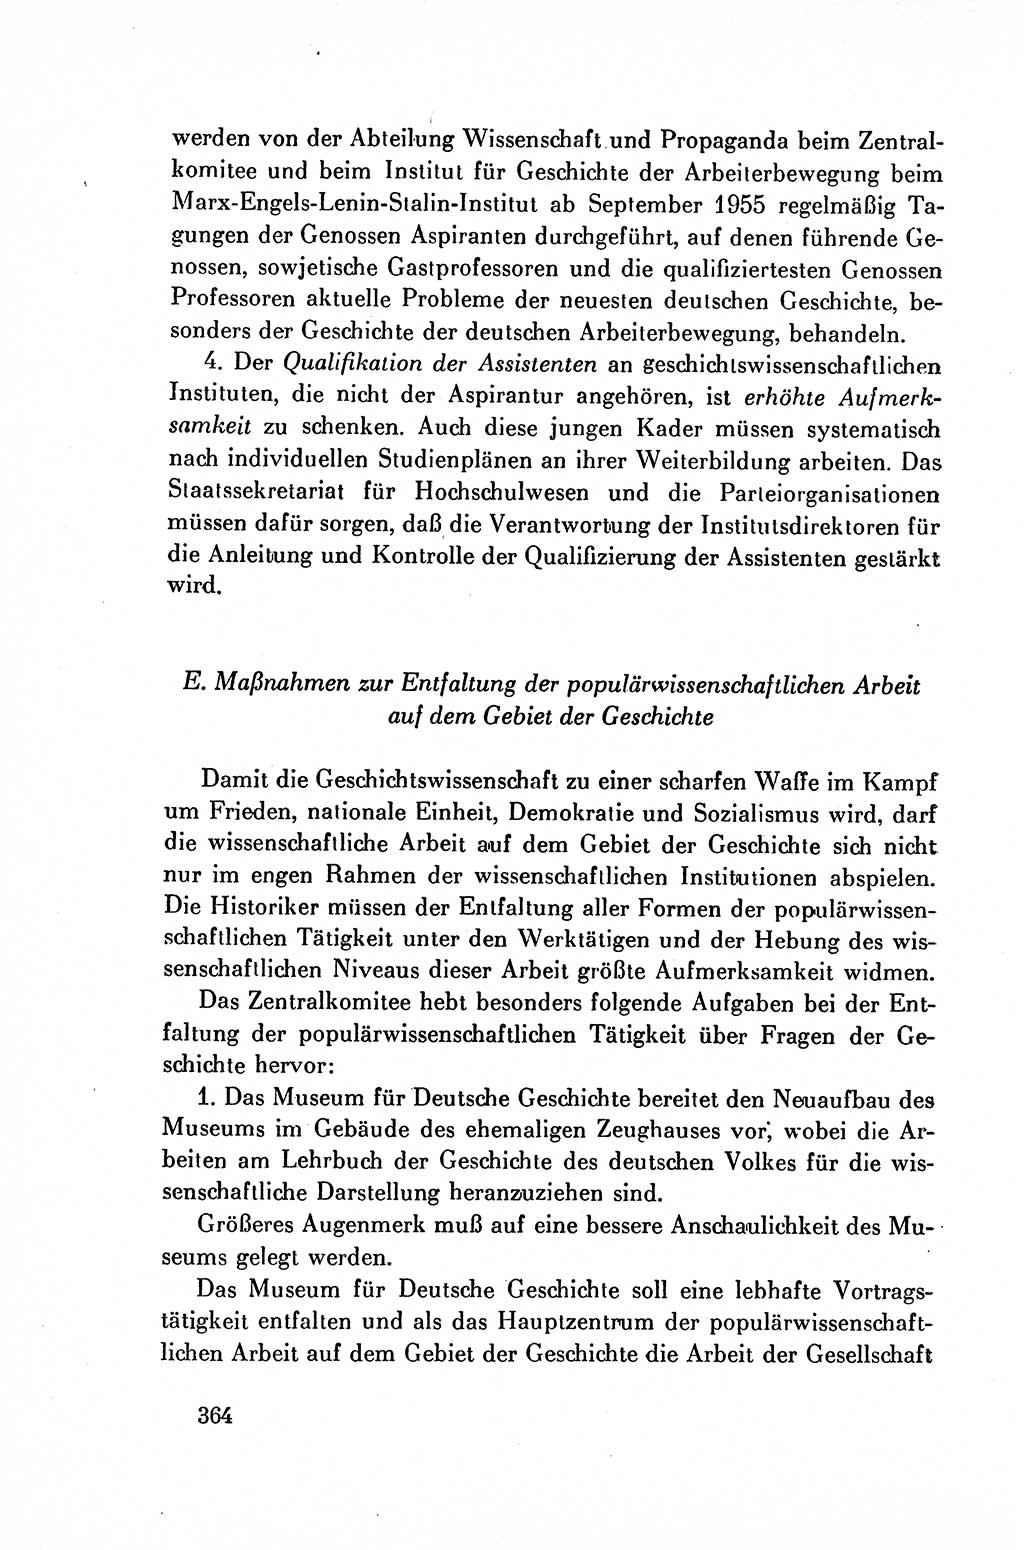 Dokumente der Sozialistischen Einheitspartei Deutschlands (SED) [Deutsche Demokratische Republik (DDR)] 1954-1955, Seite 364 (Dok. SED DDR 1954-1955, S. 364)